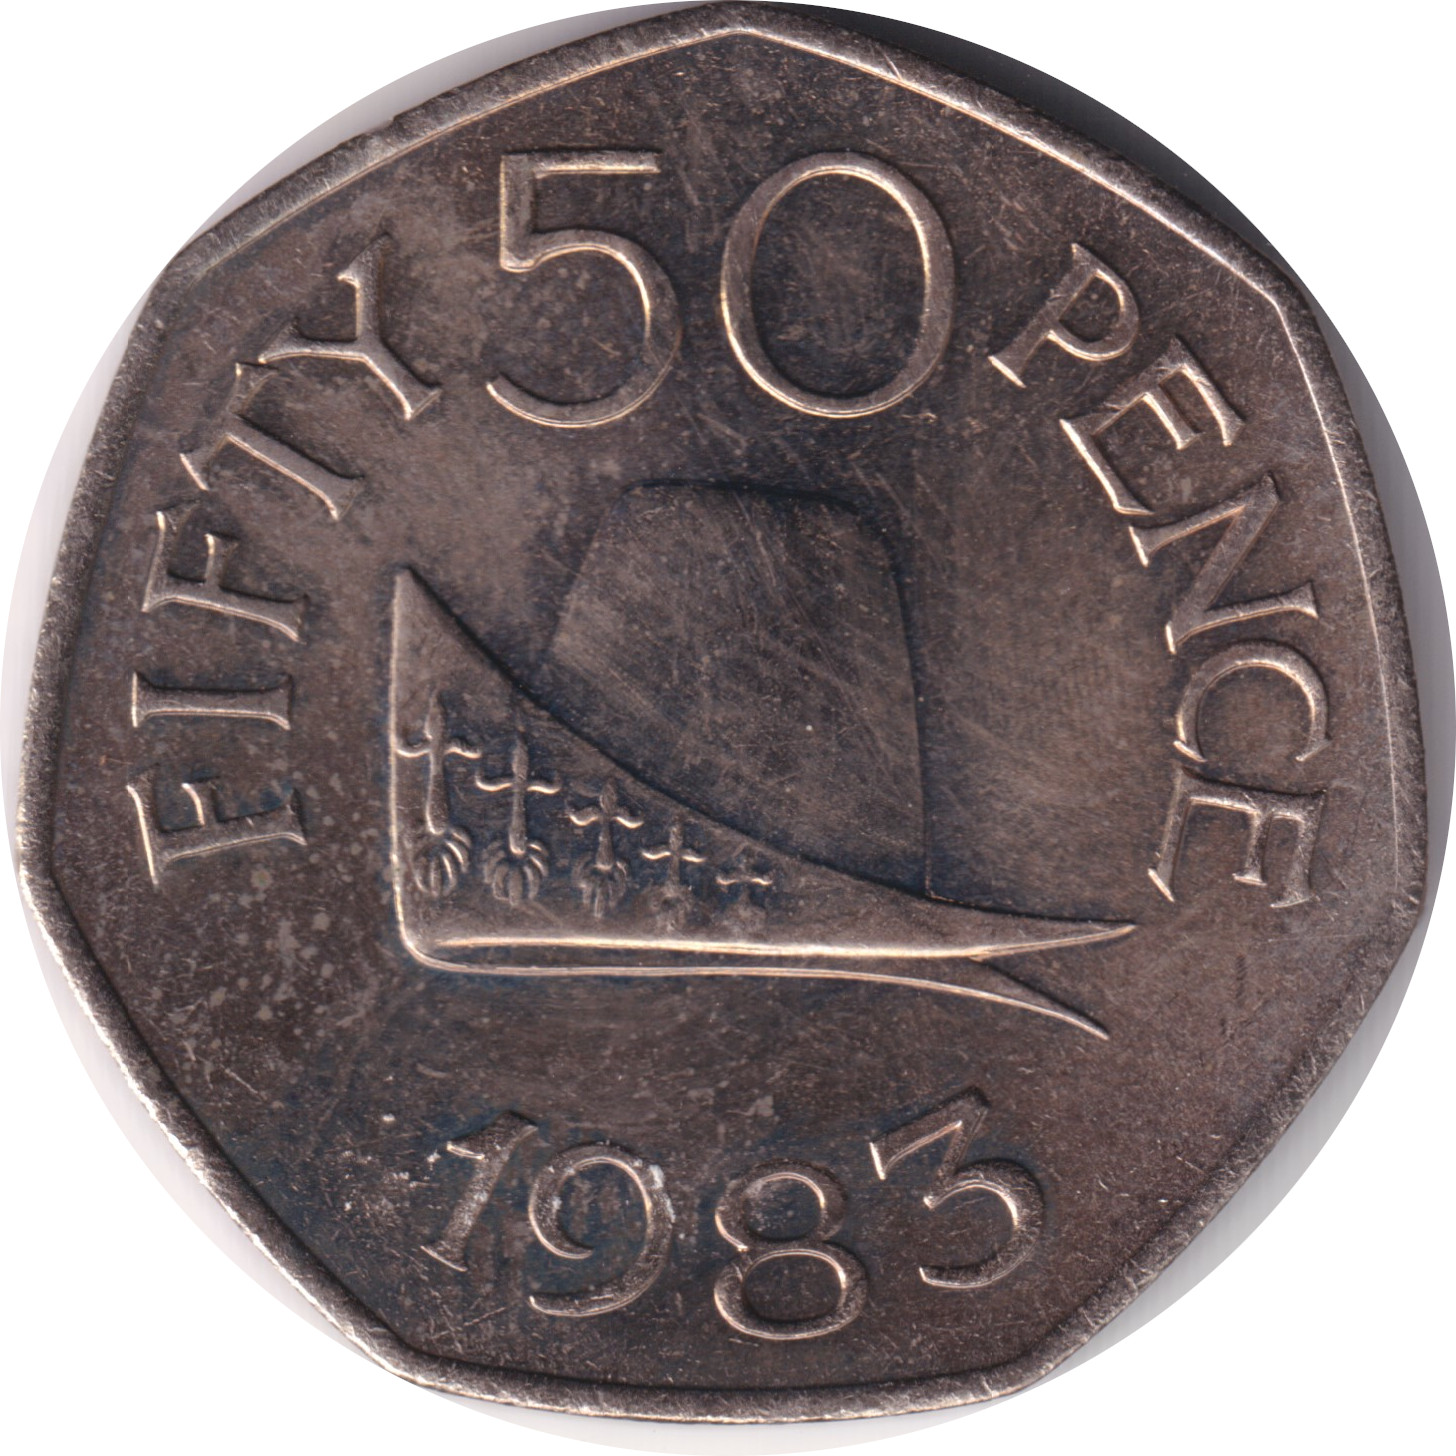 50 pence - Chapeau - Fifty pence